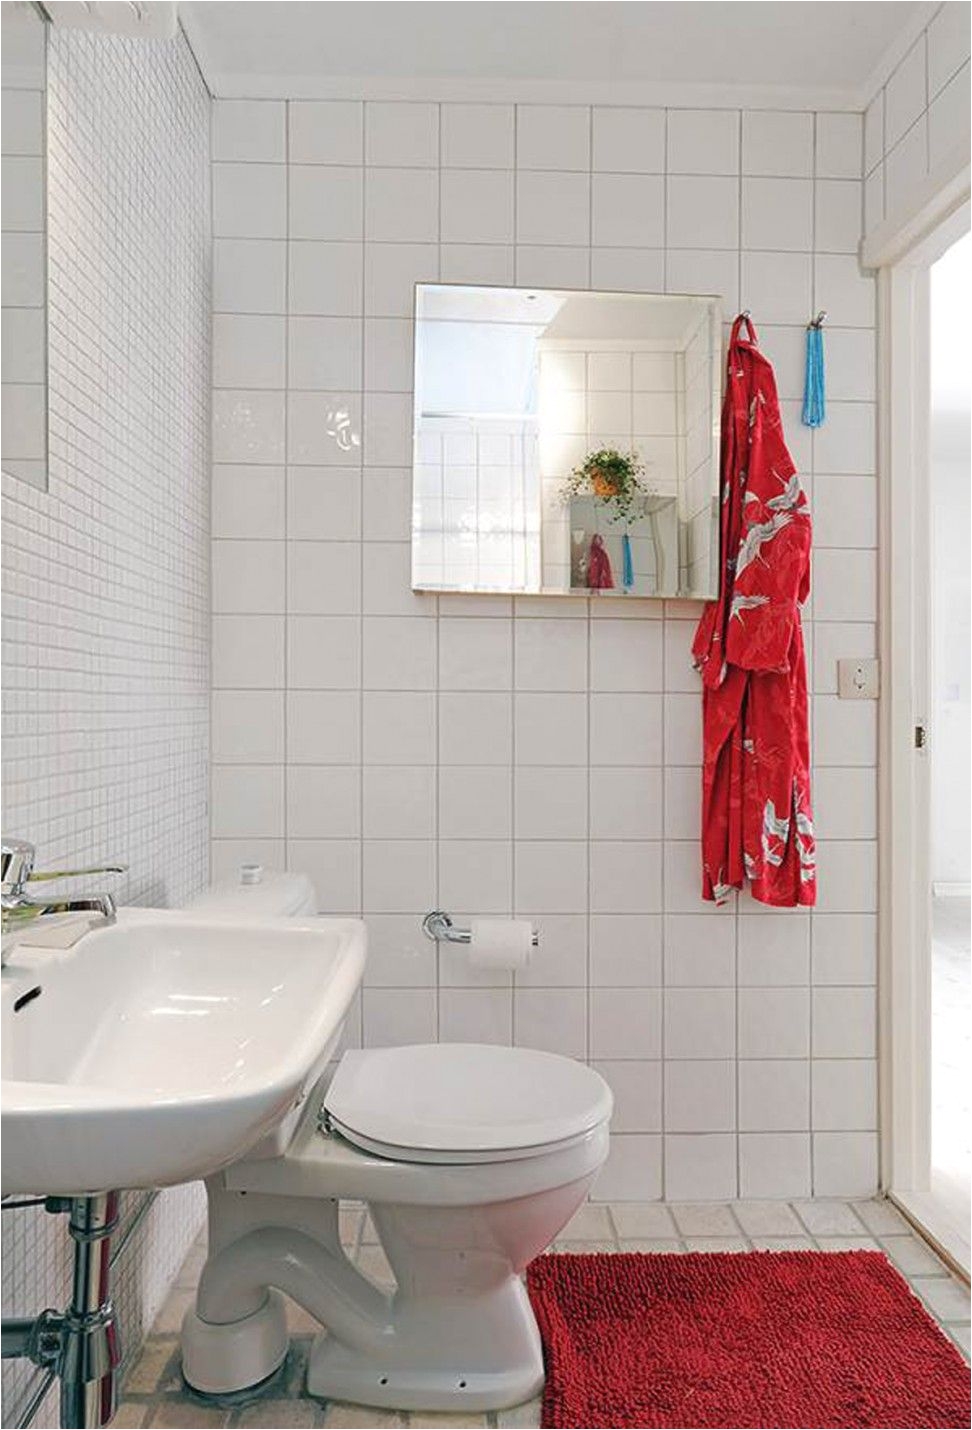 interior design ideas for small bathroom in india